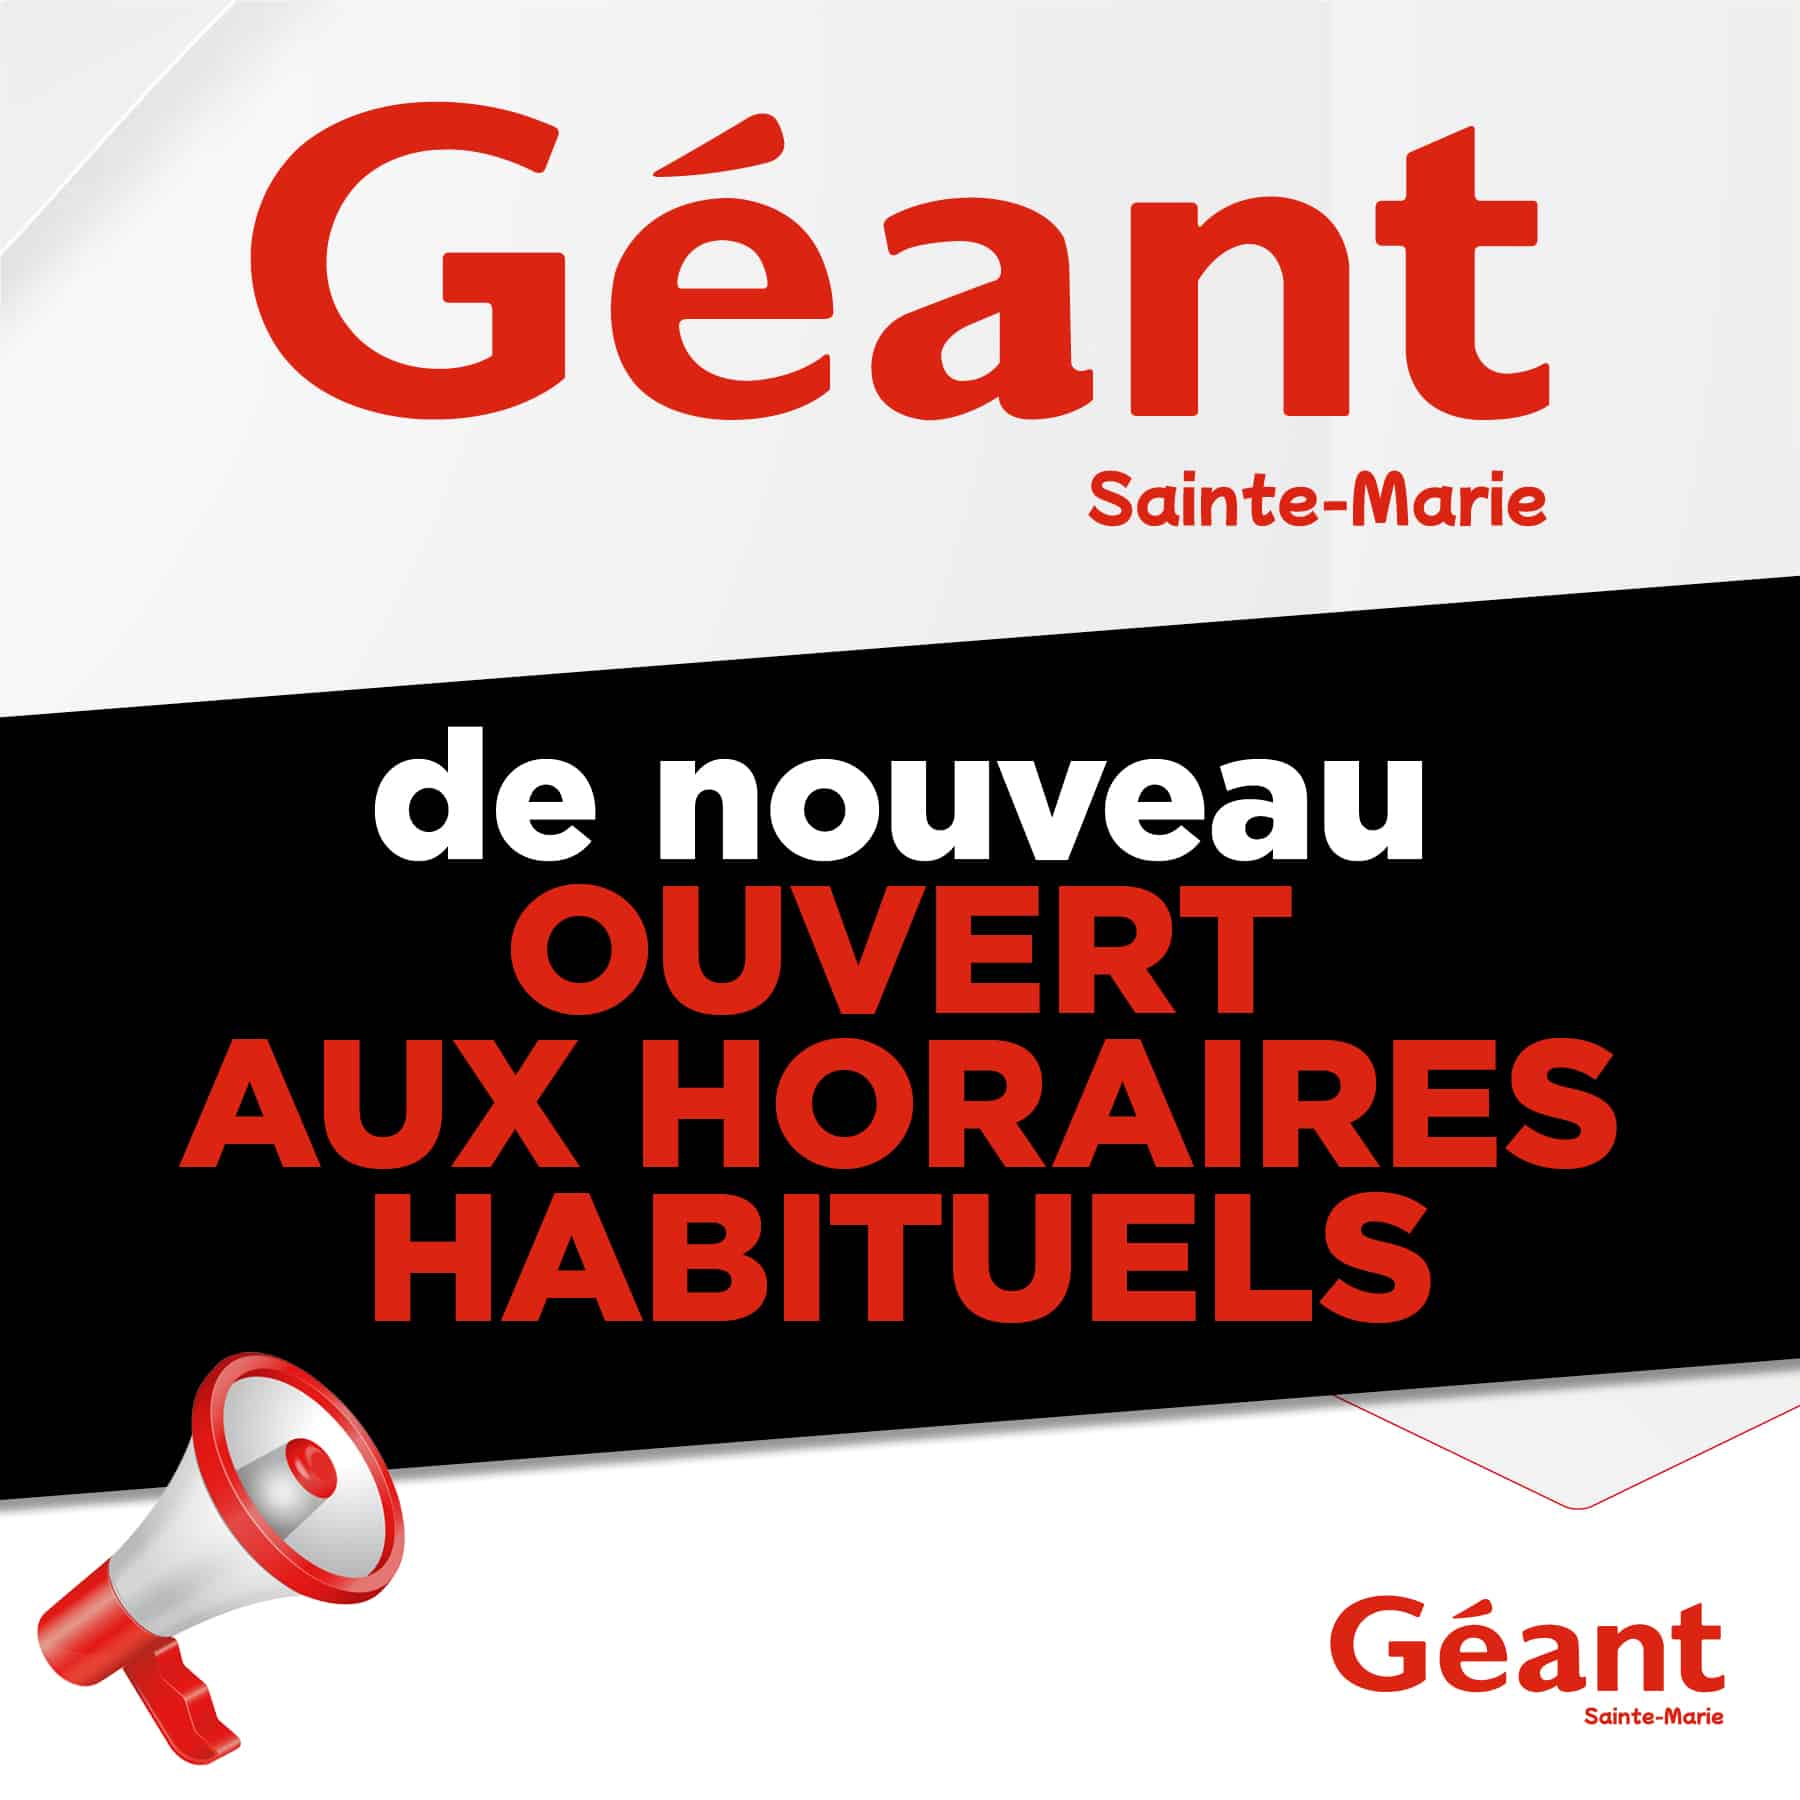 ❗️Information partenaire Géant Sainte-Marie❗️